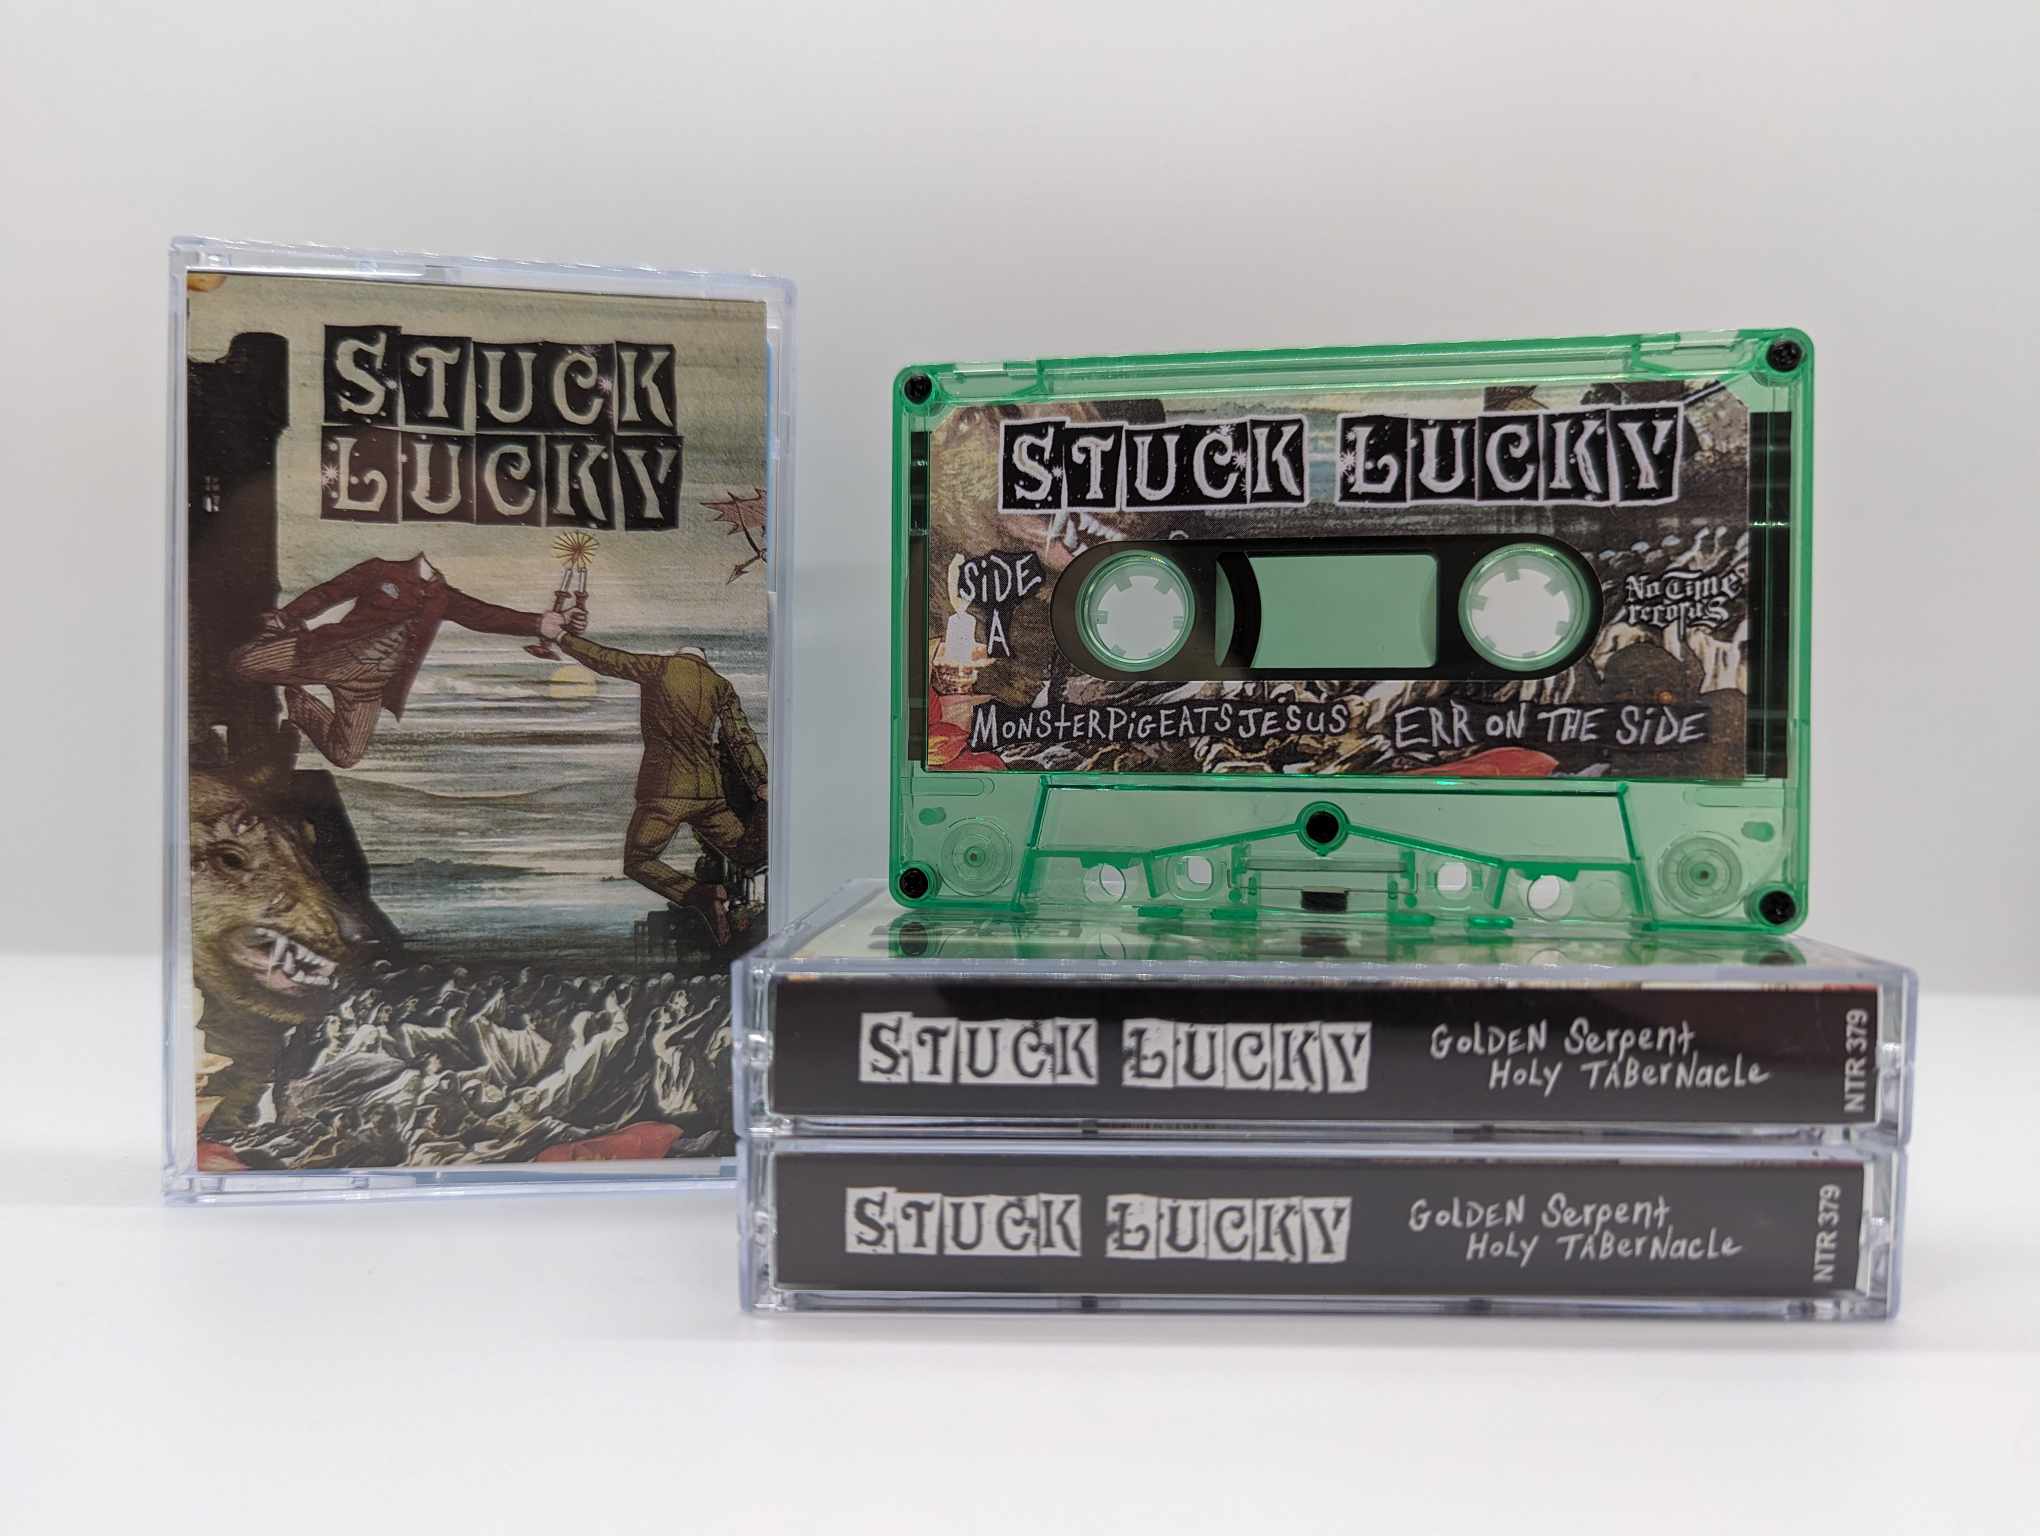 Stuck Lucky - Golden Serpent Holy Tabernacle Cassette [SEAFOAM]